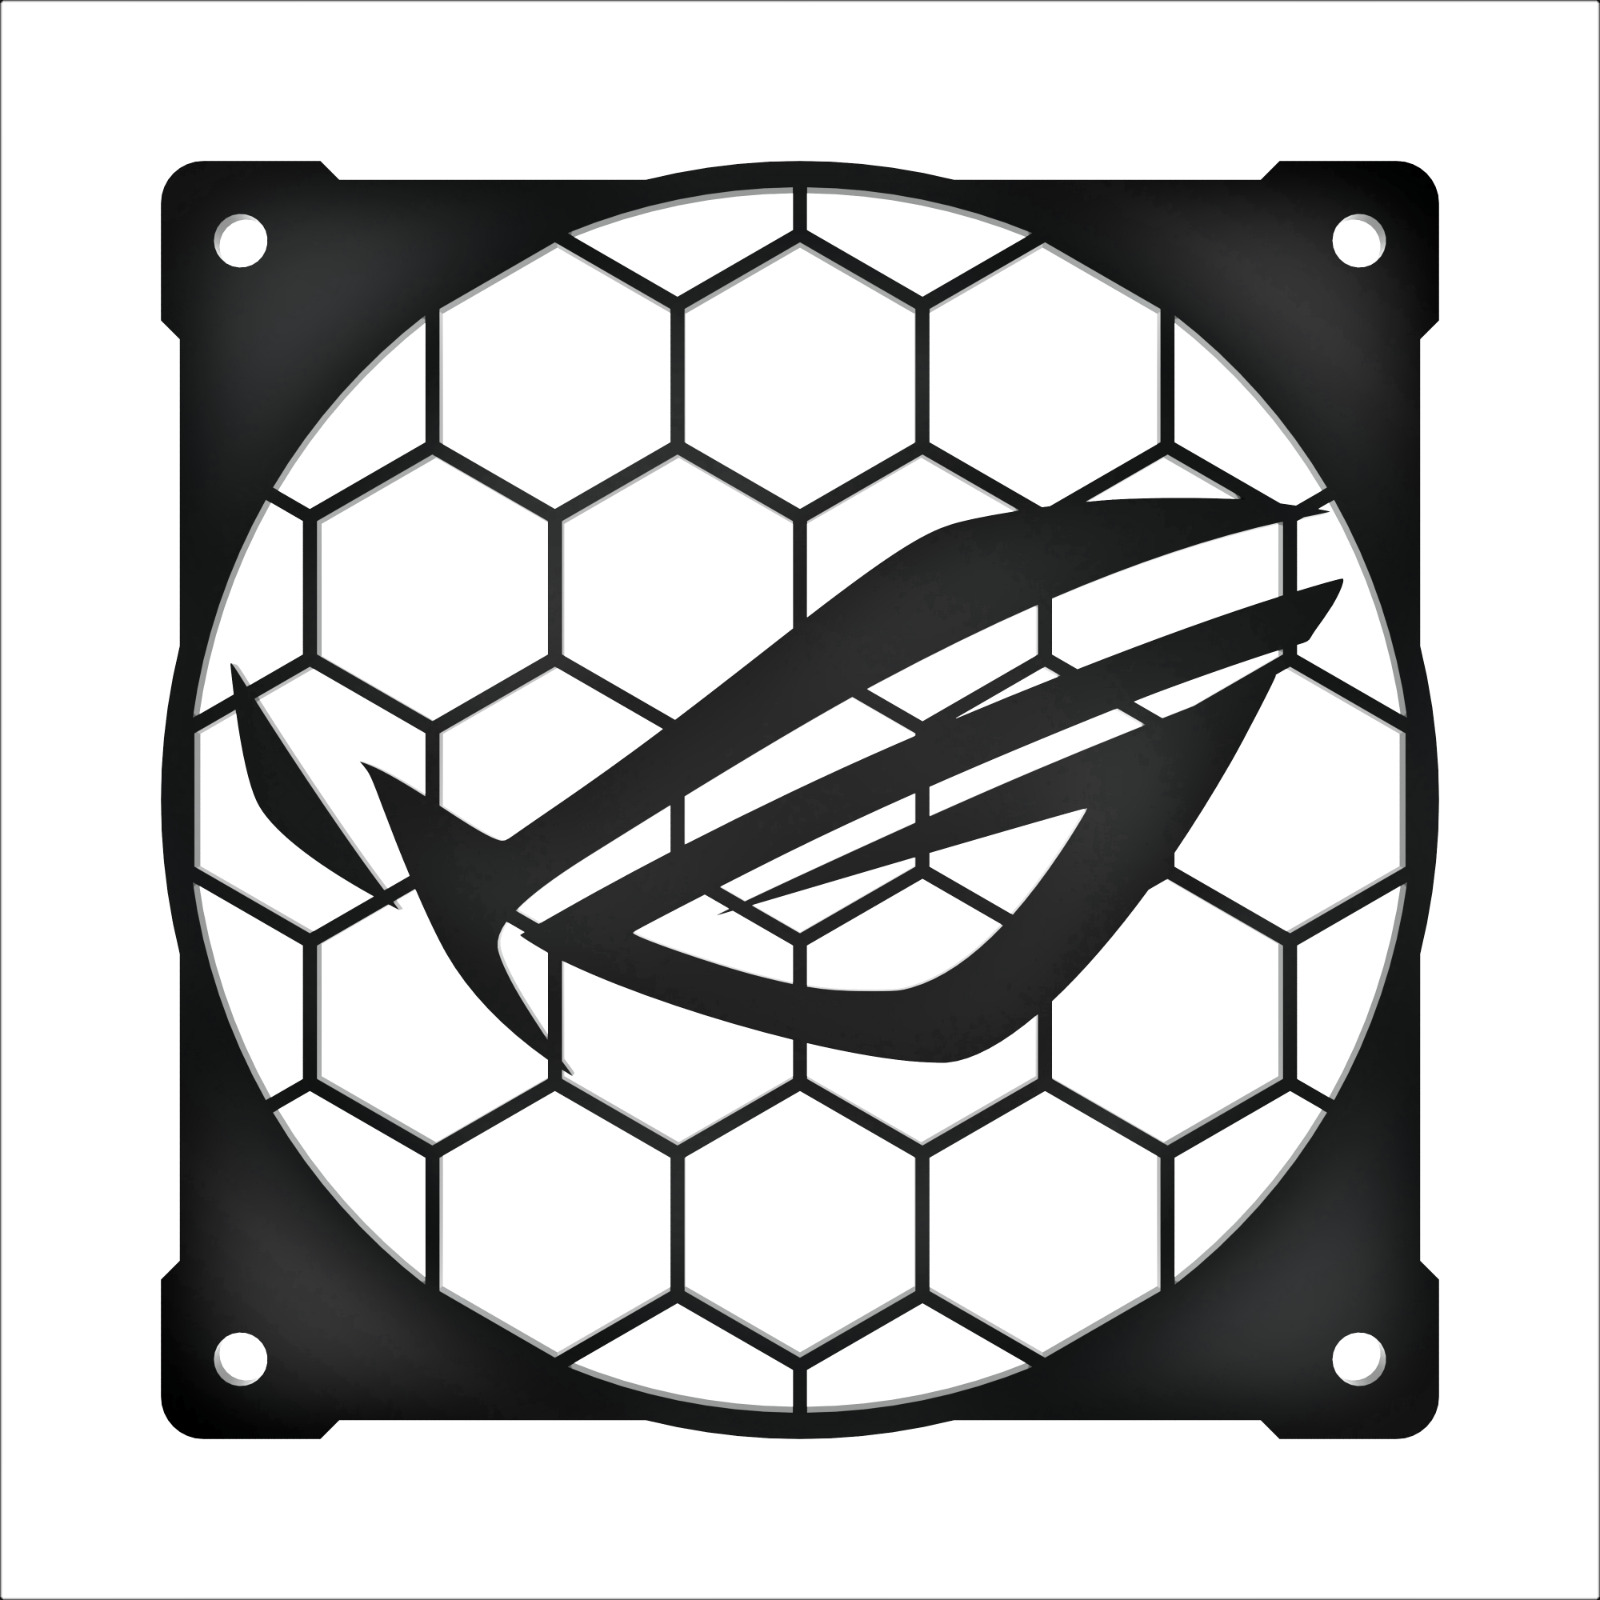 120mm Case Fan Grill - Unique Hexagon Asus ROG Design Great for RGB aRGB Fans